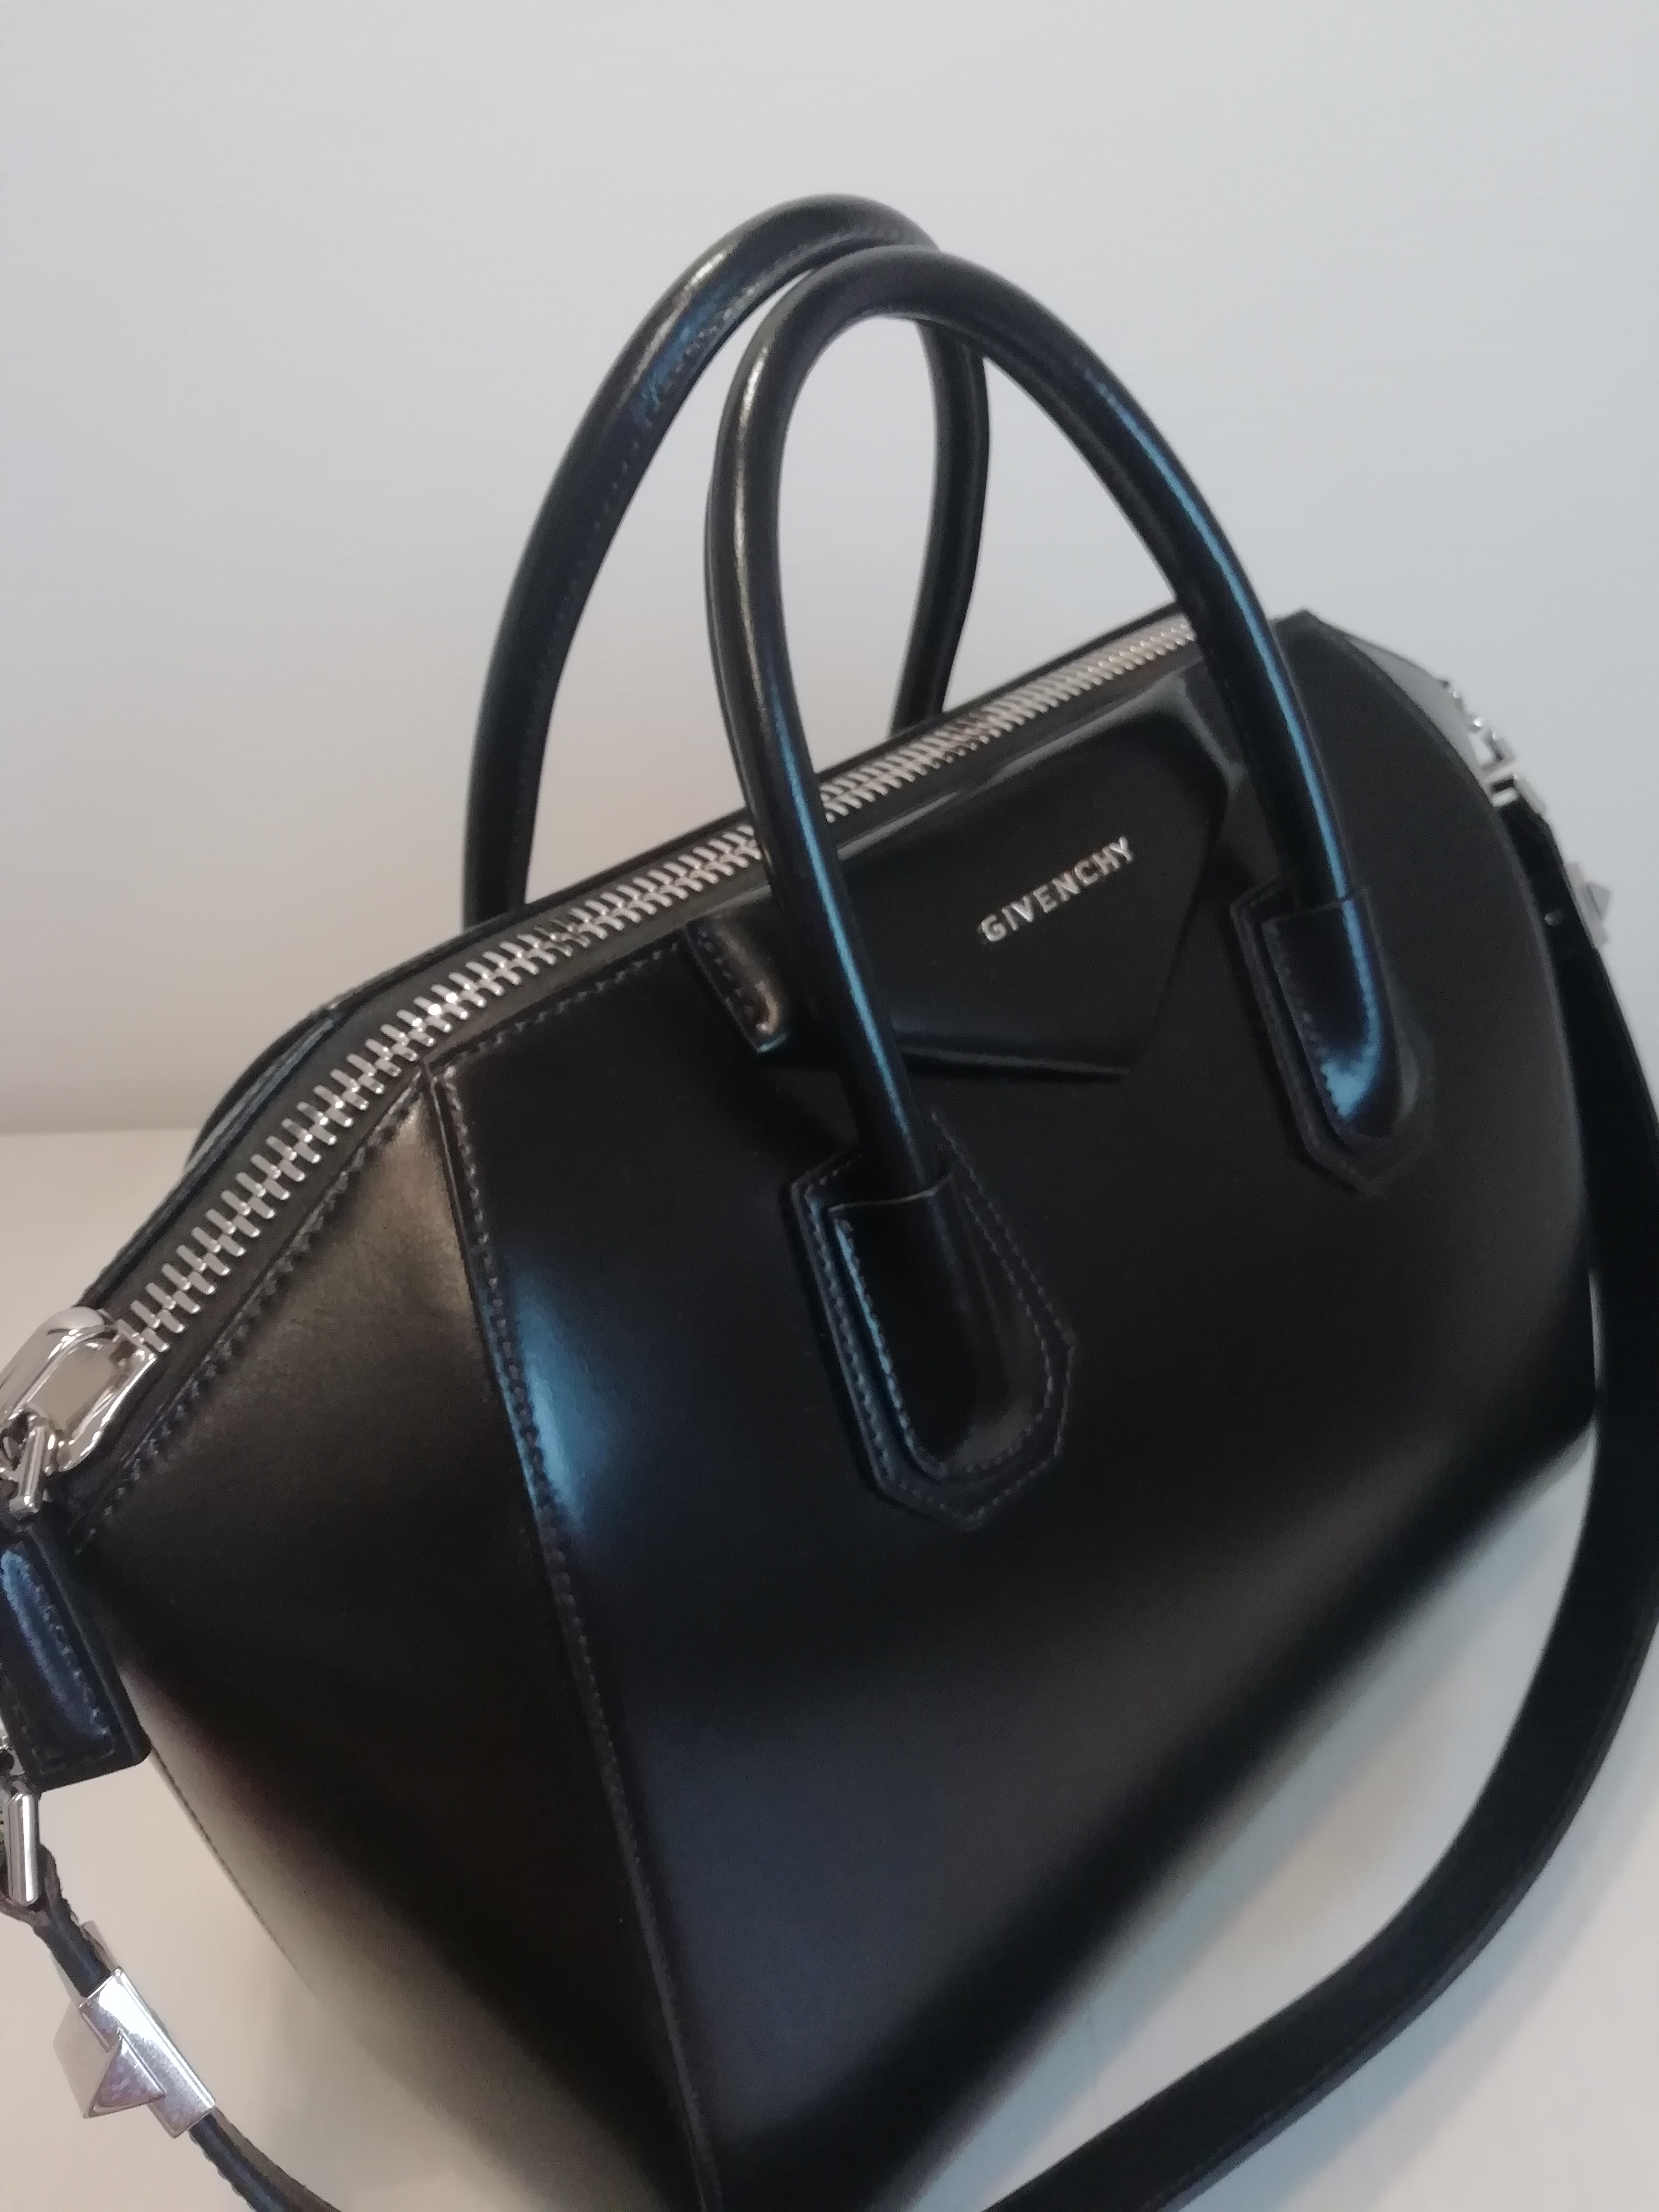 Bag Review: Givenchy Antigona